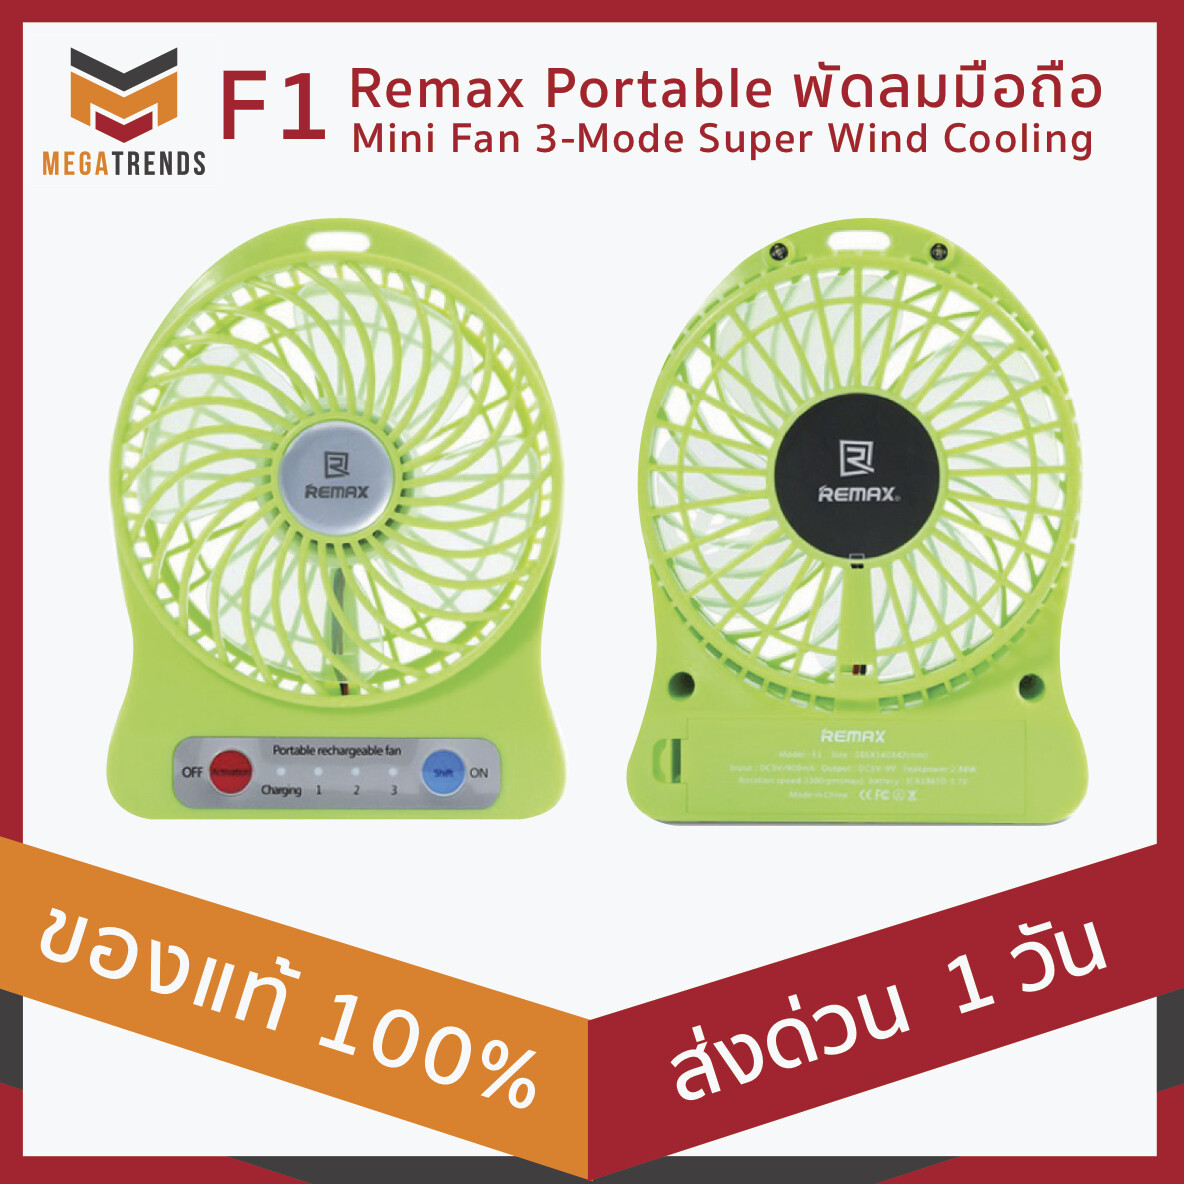 ลดล้างสต๊อค - ส่งเร็ว - ประกัน 1 เดือน Remax F1 Portable พัดลมมือถือ Mini Fan 3-Mode Super Wind Cooling ปรับได้ 3 ระดับ Package ของสินค้าไม่สมบูรณ์